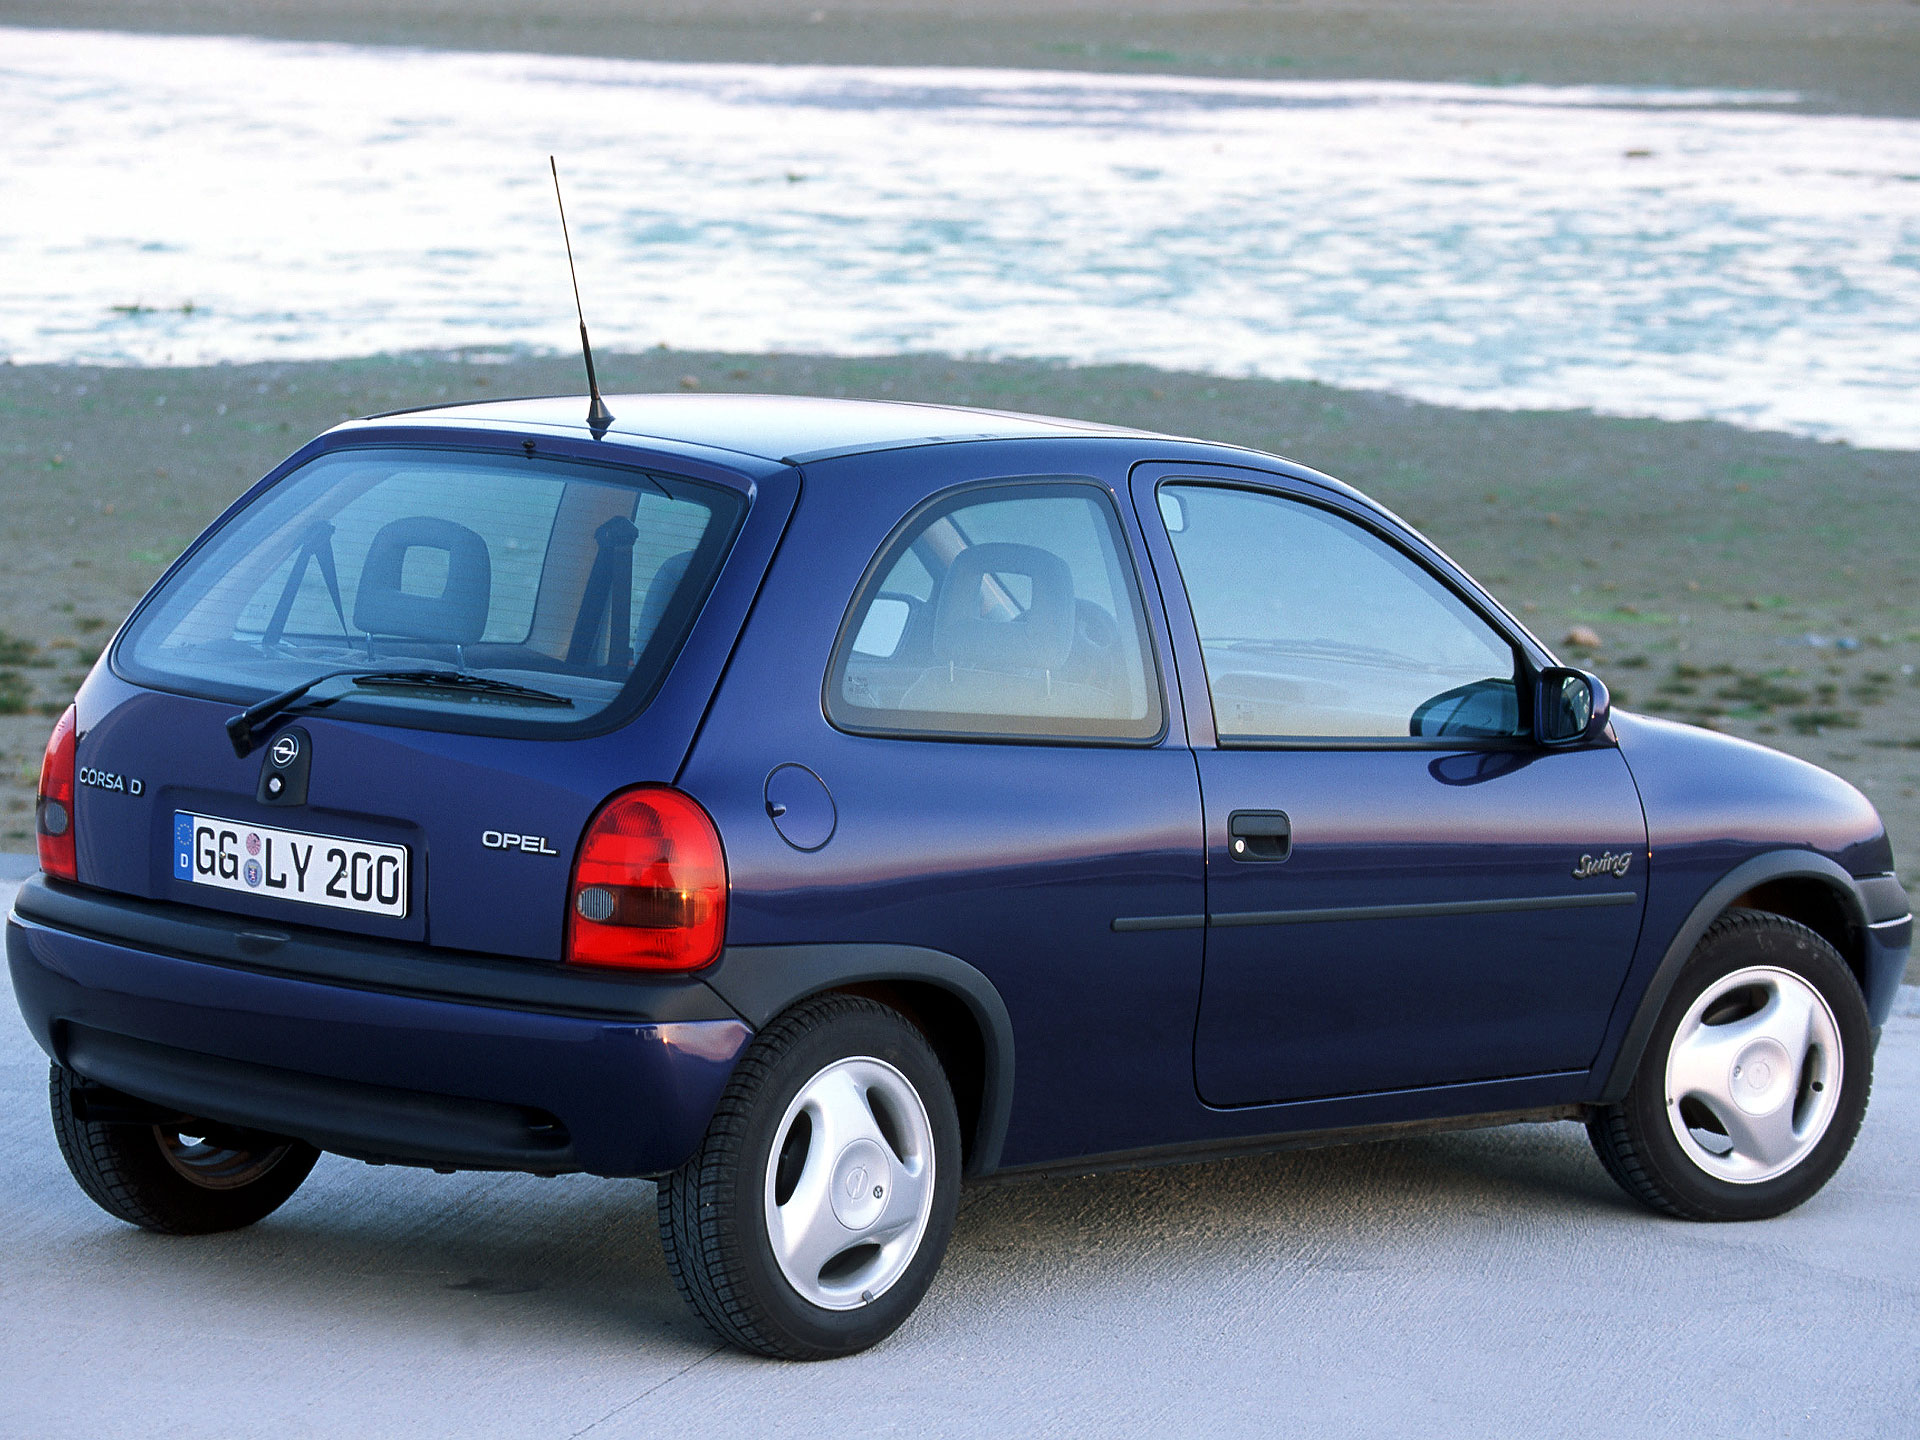 Opel Corsa "Swing" 3-door (B) '1998â€“2000. Ð¥Ð°Ñ€Ð°ÐºÑ‚ÐµÑ€Ð¸ÑÑ‚Ð¸ÐºÐ¸ Ð¸Ð·Ð¾Ð±Ñ€Ð°Ð¶ÐµÐ½Ð¸Ñ: